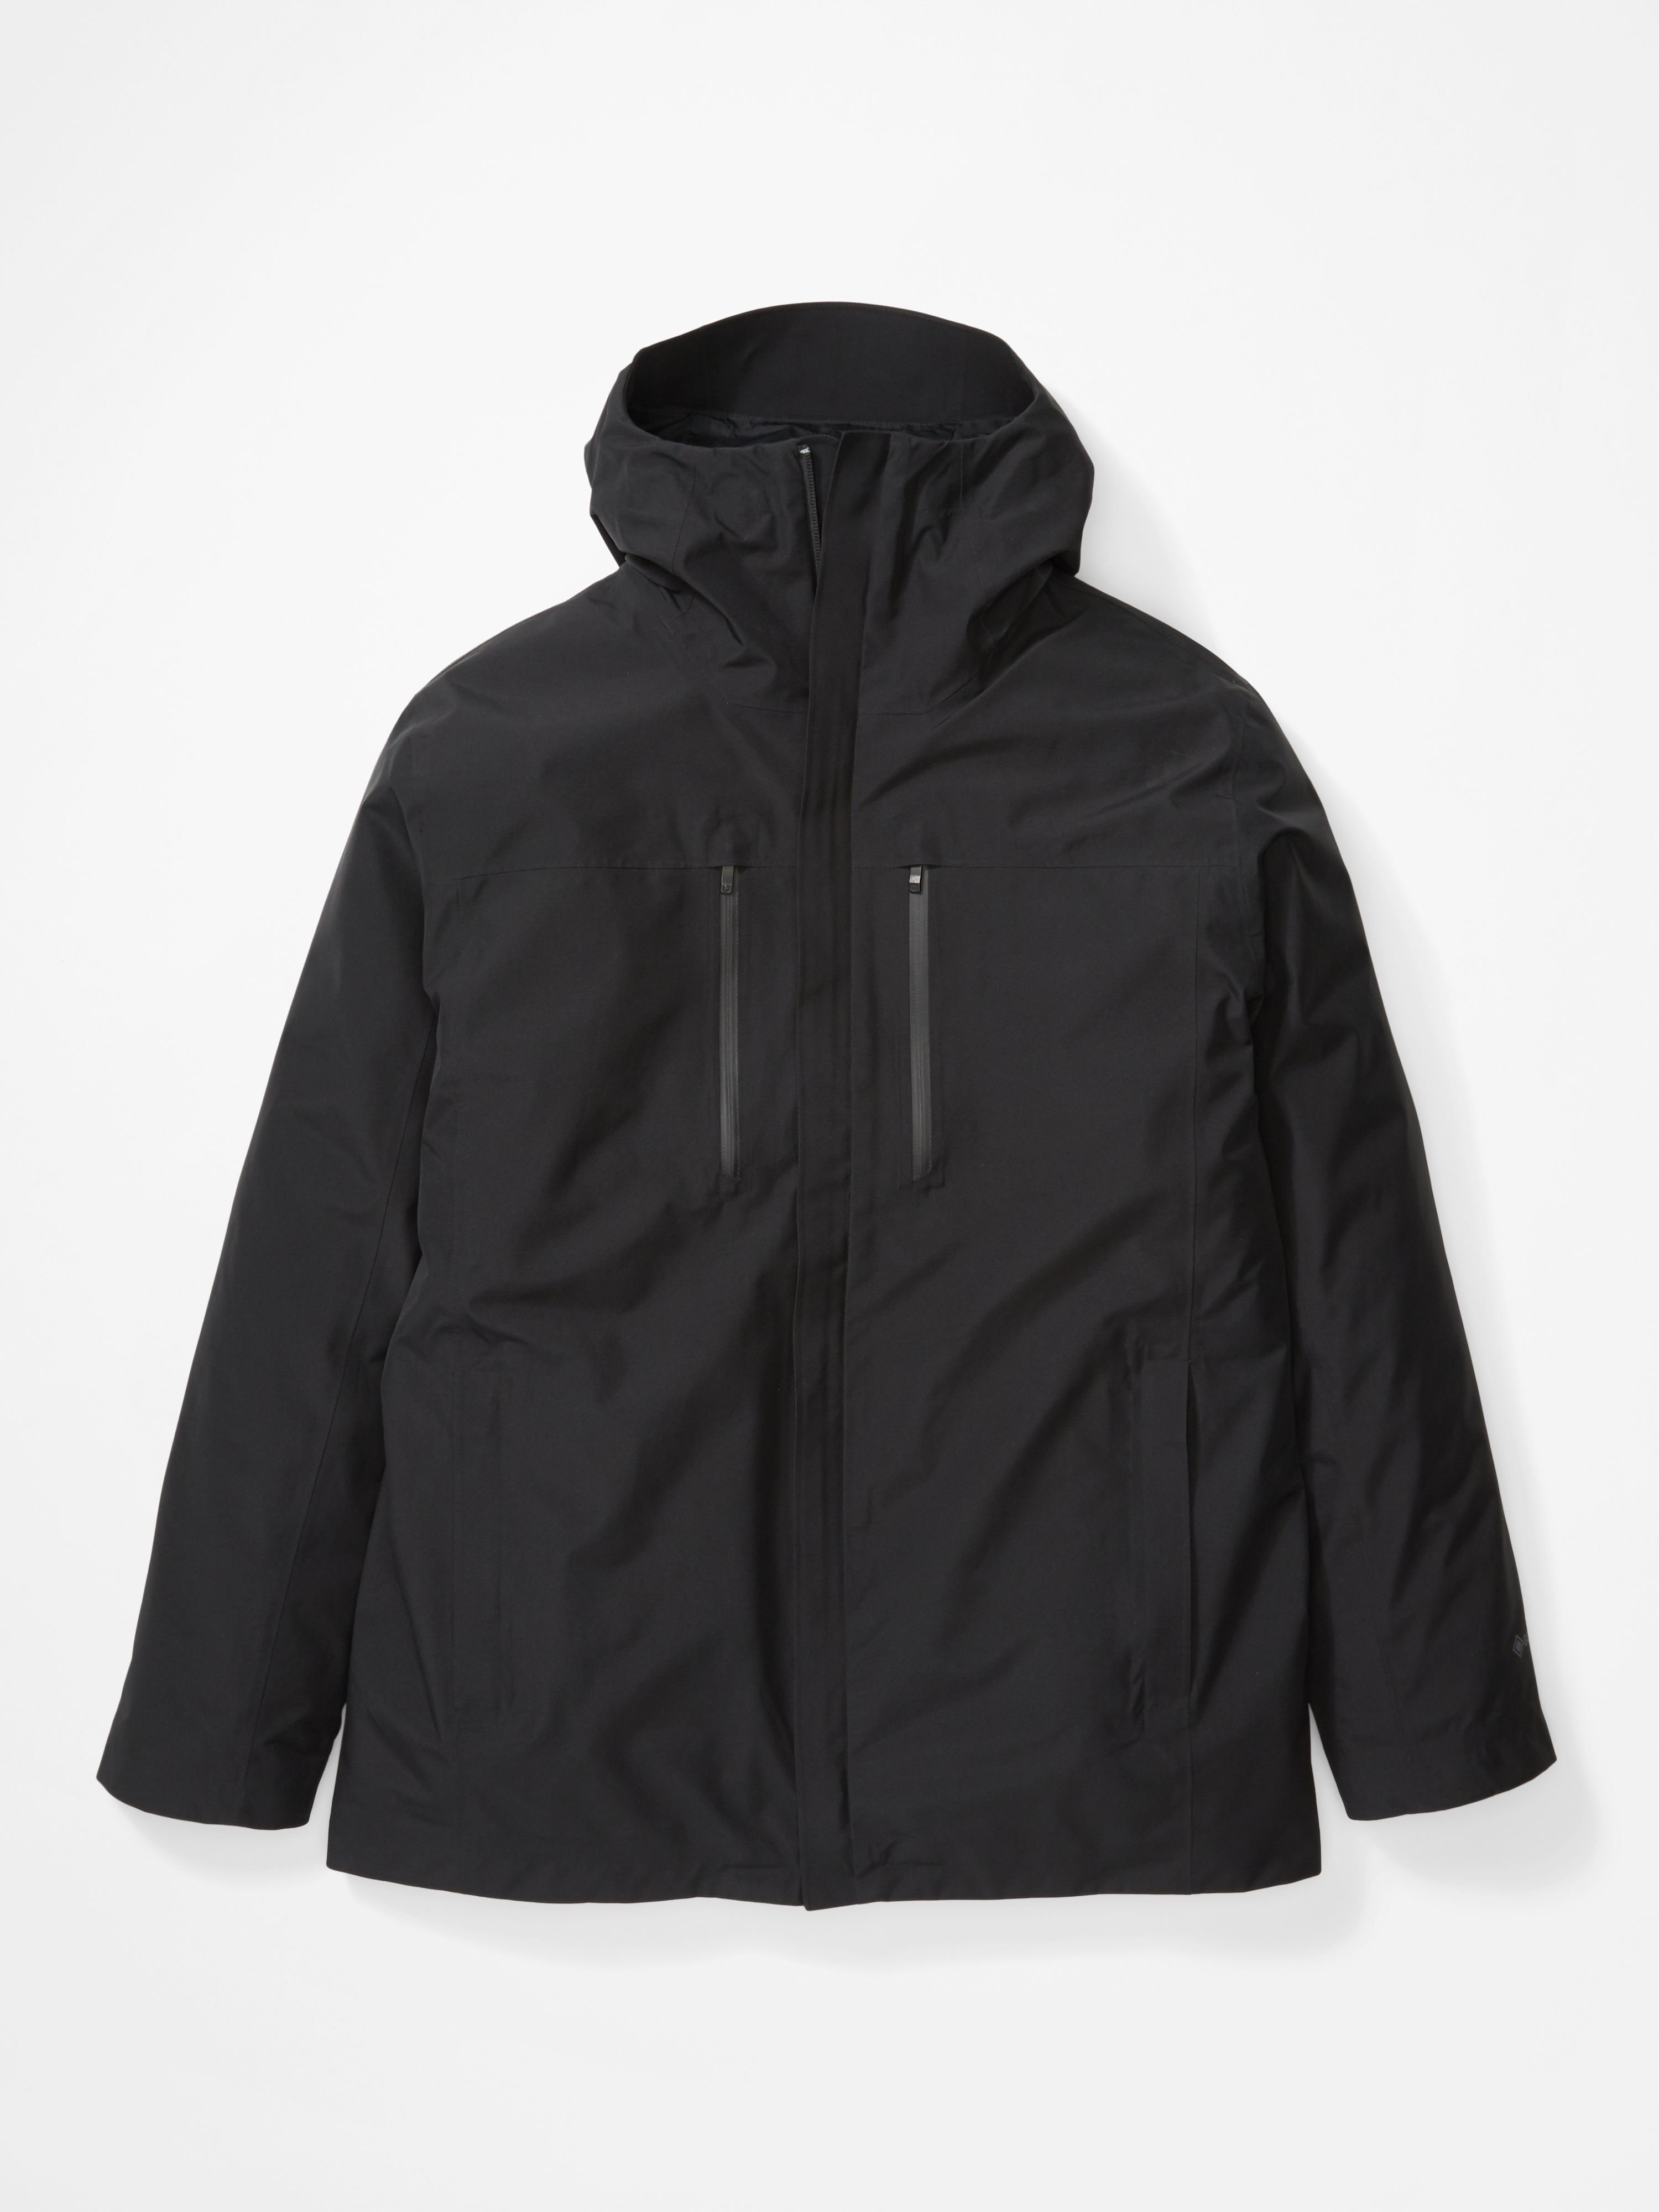 Marmot Bleeker Component Jacket - 3-in-1 jacket - Men's